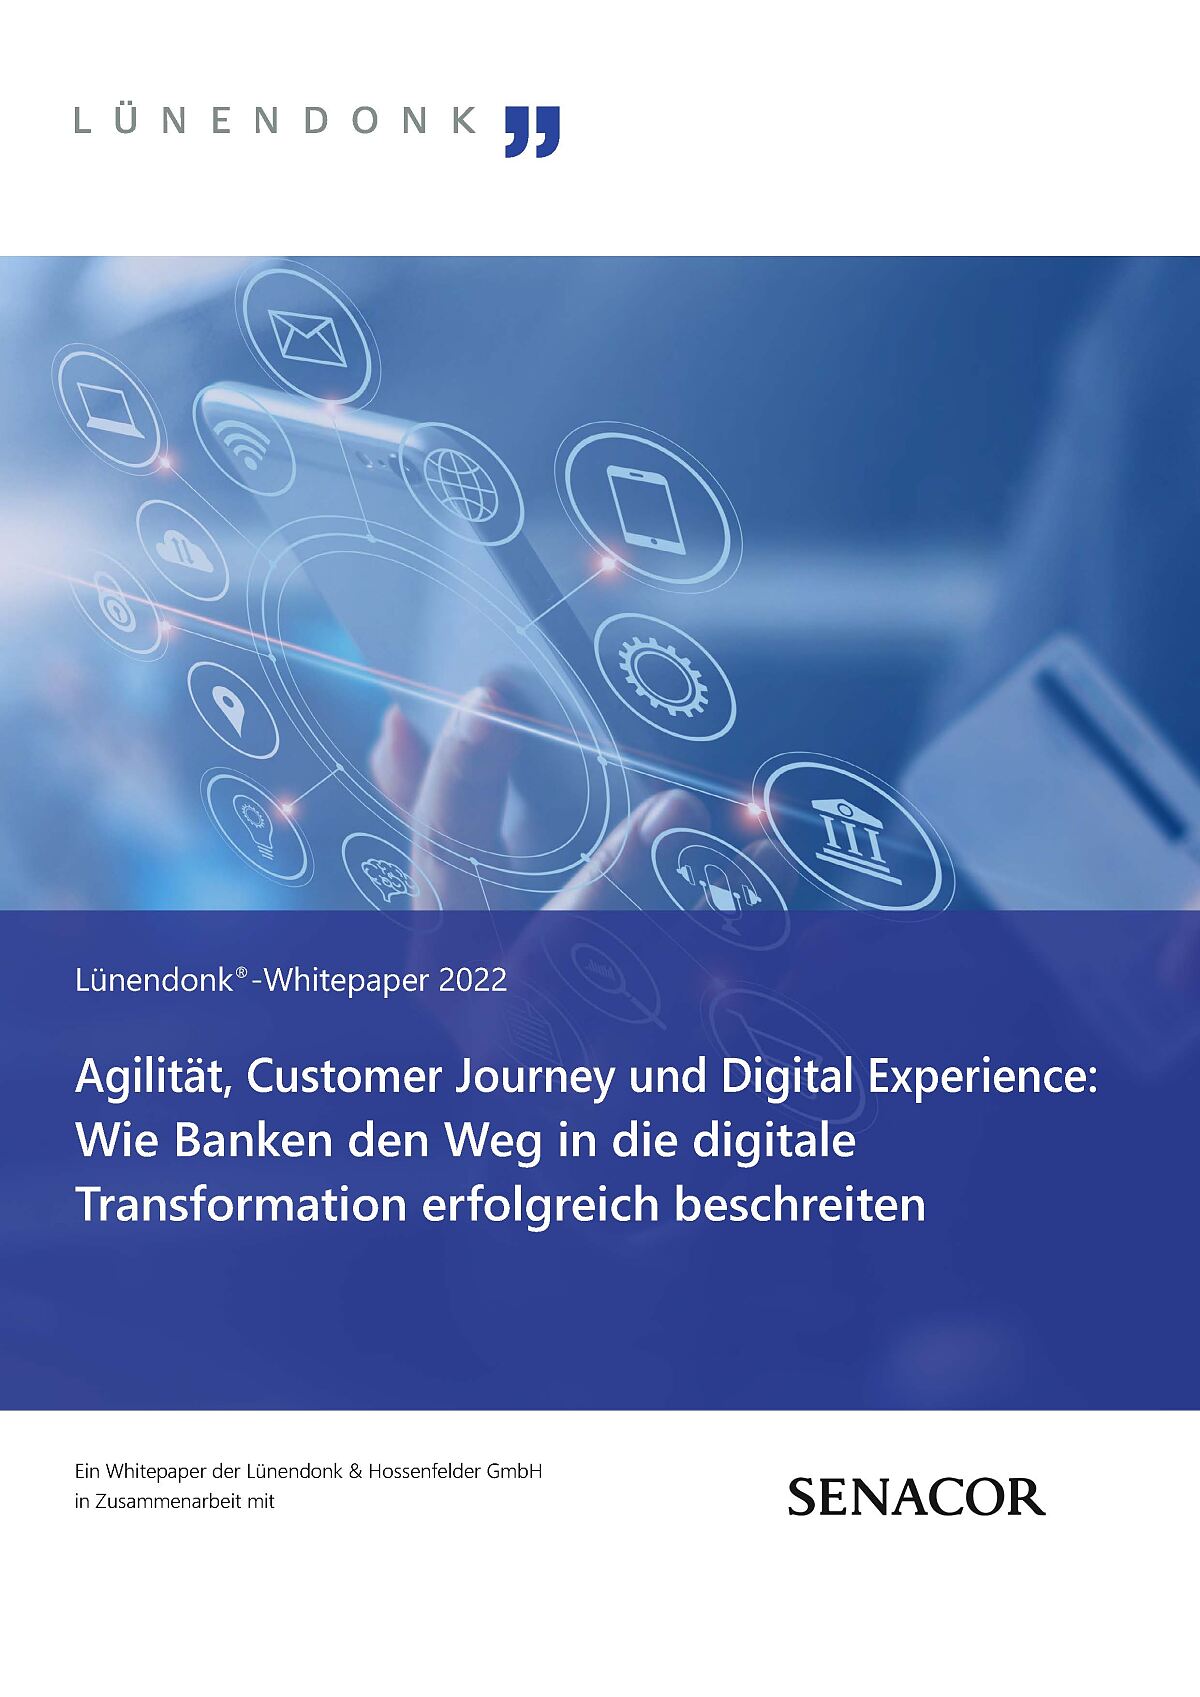 Lünendonk-Whitepaper: Wie Banken den Weg in die digitale Transformation erfolgreich beschreiten